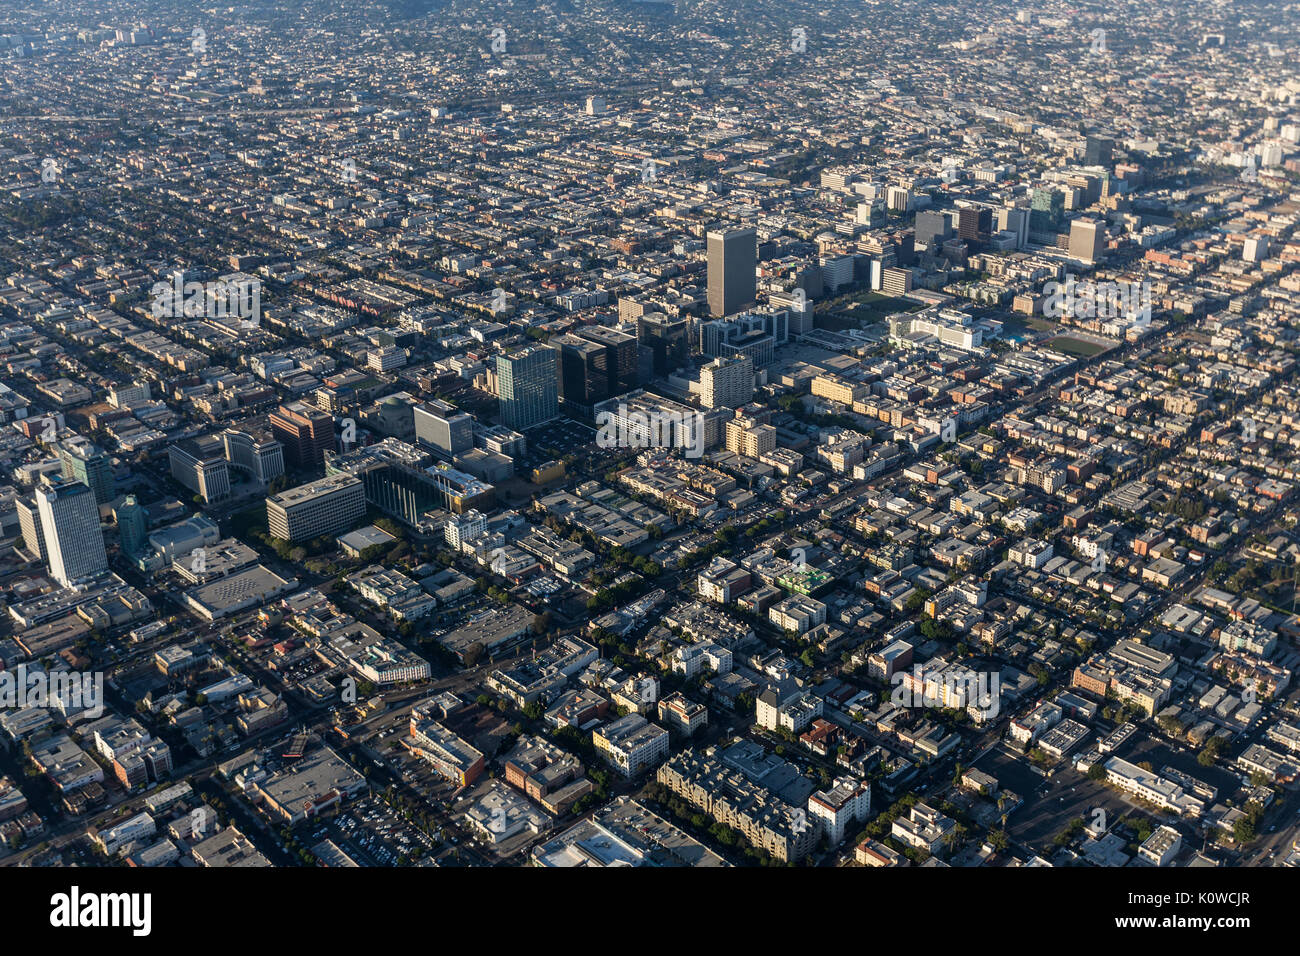 Luftbild des Wilshire Blvd. und die koreatown Nachbarschaft in Los Angeles, Kalifornien. Stockfoto